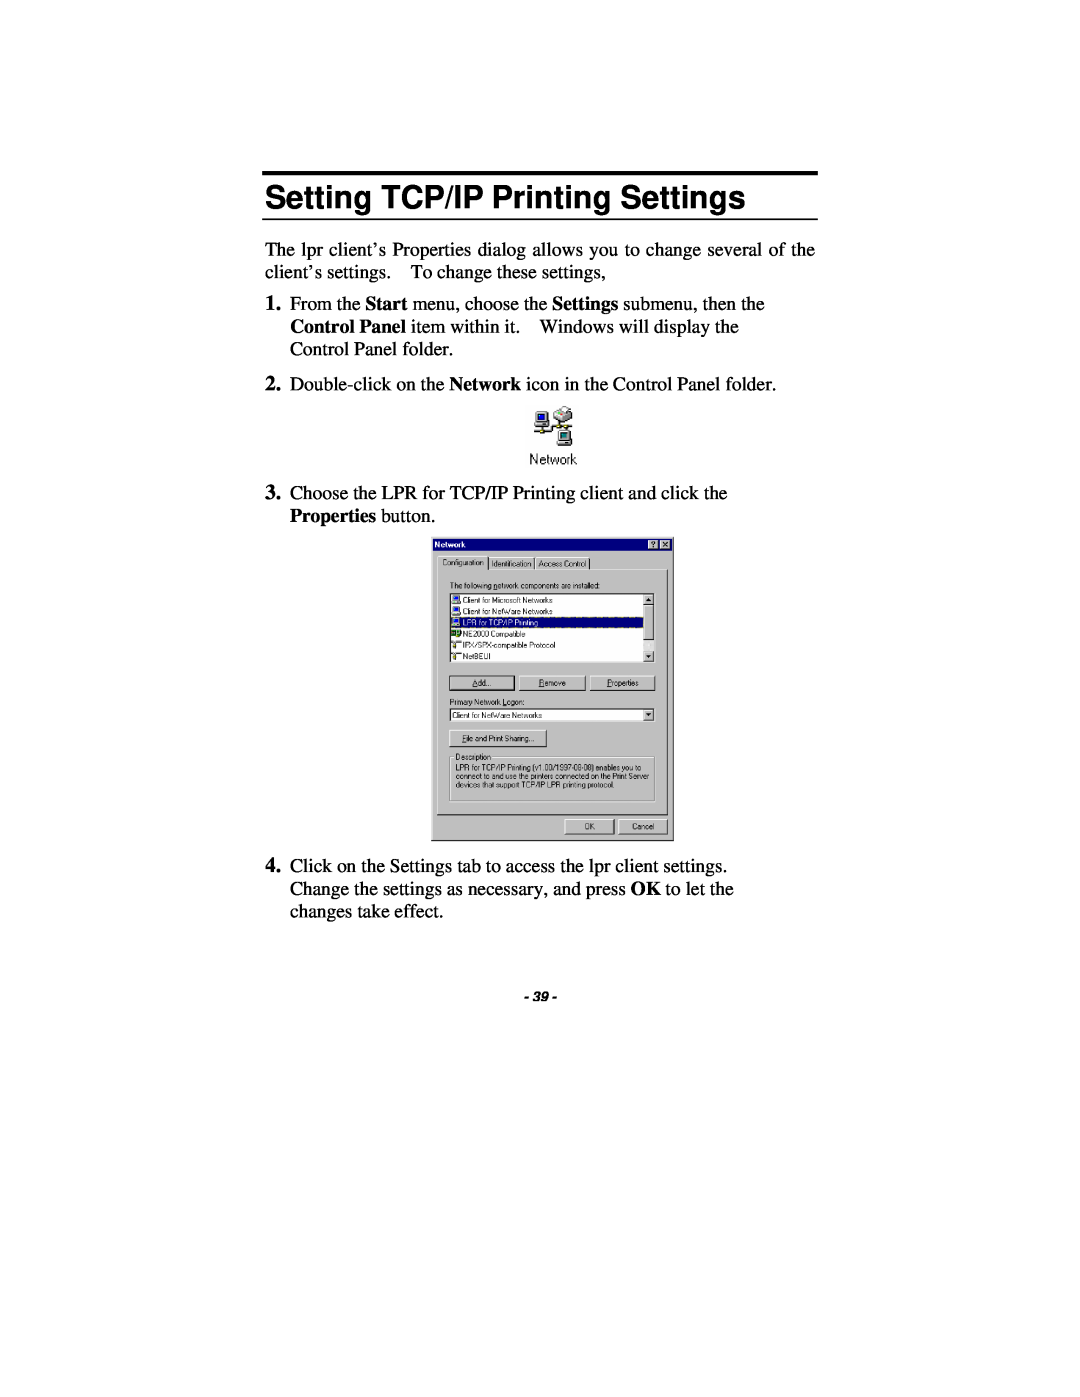 TRENDnet TE100-P1U manual Setting TCP/IP Printing Settings 